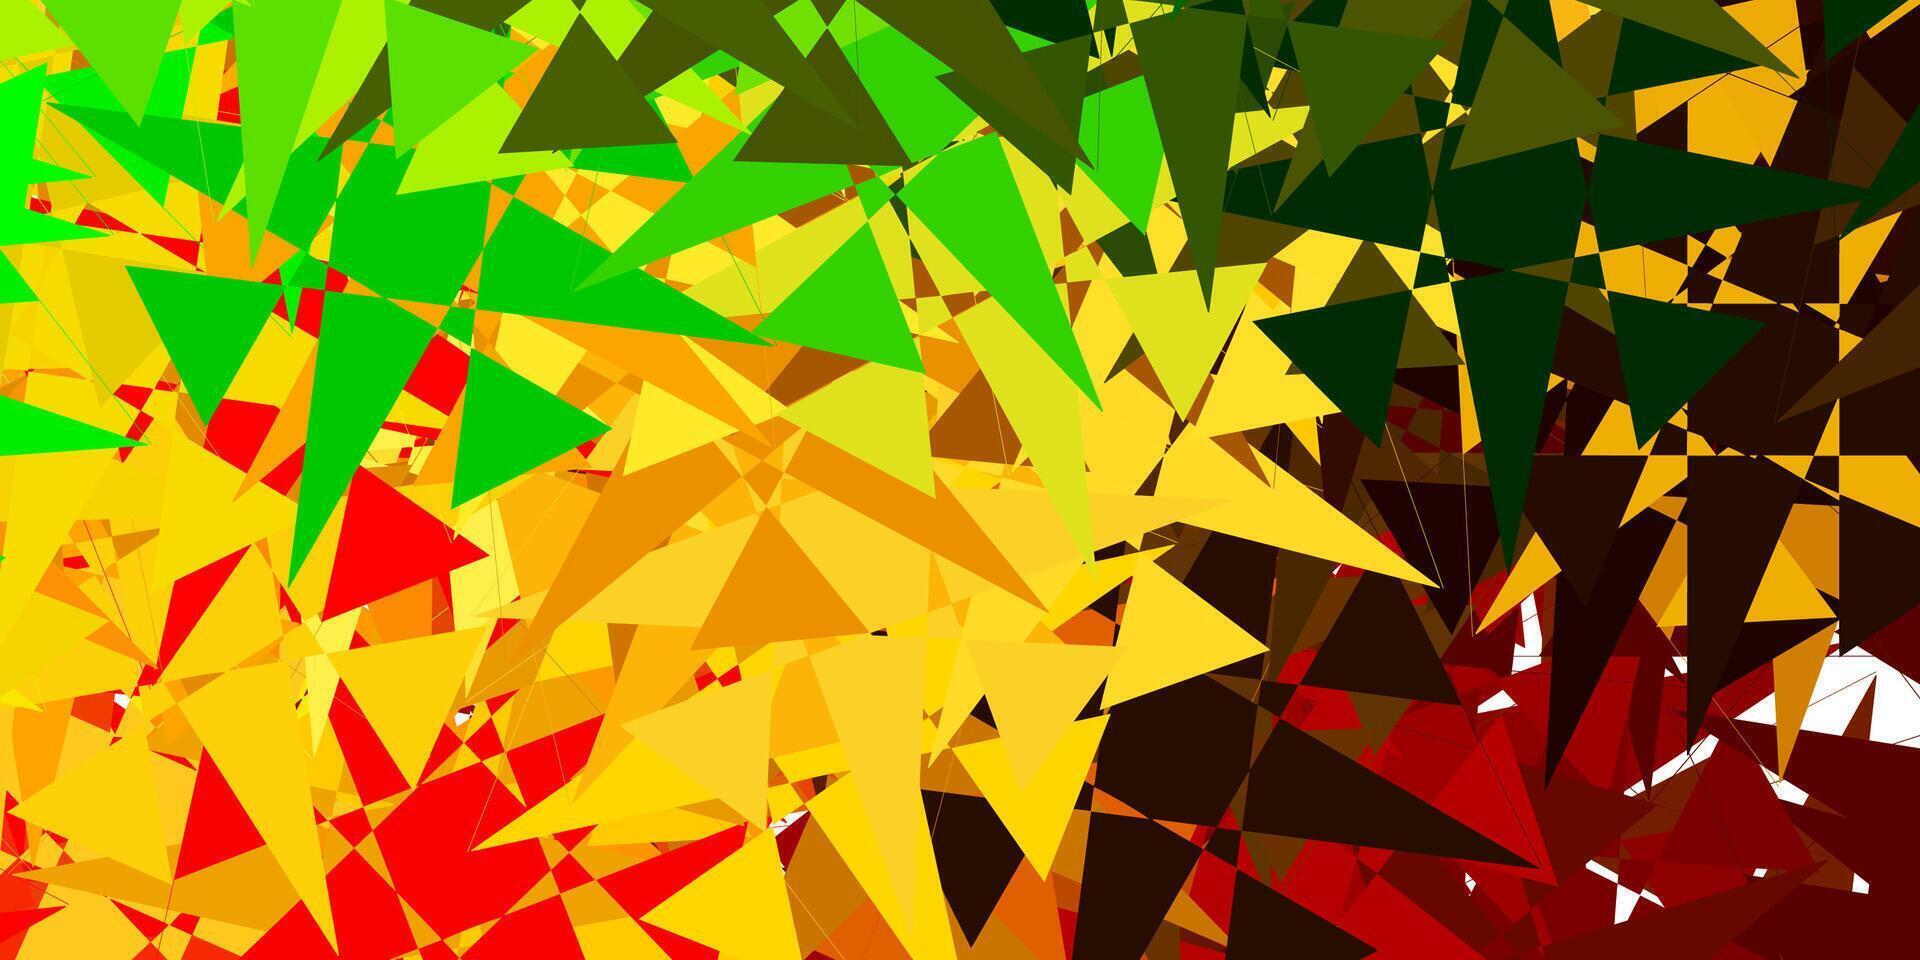 modello vettoriale verde scuro, giallo con forme poligonali.